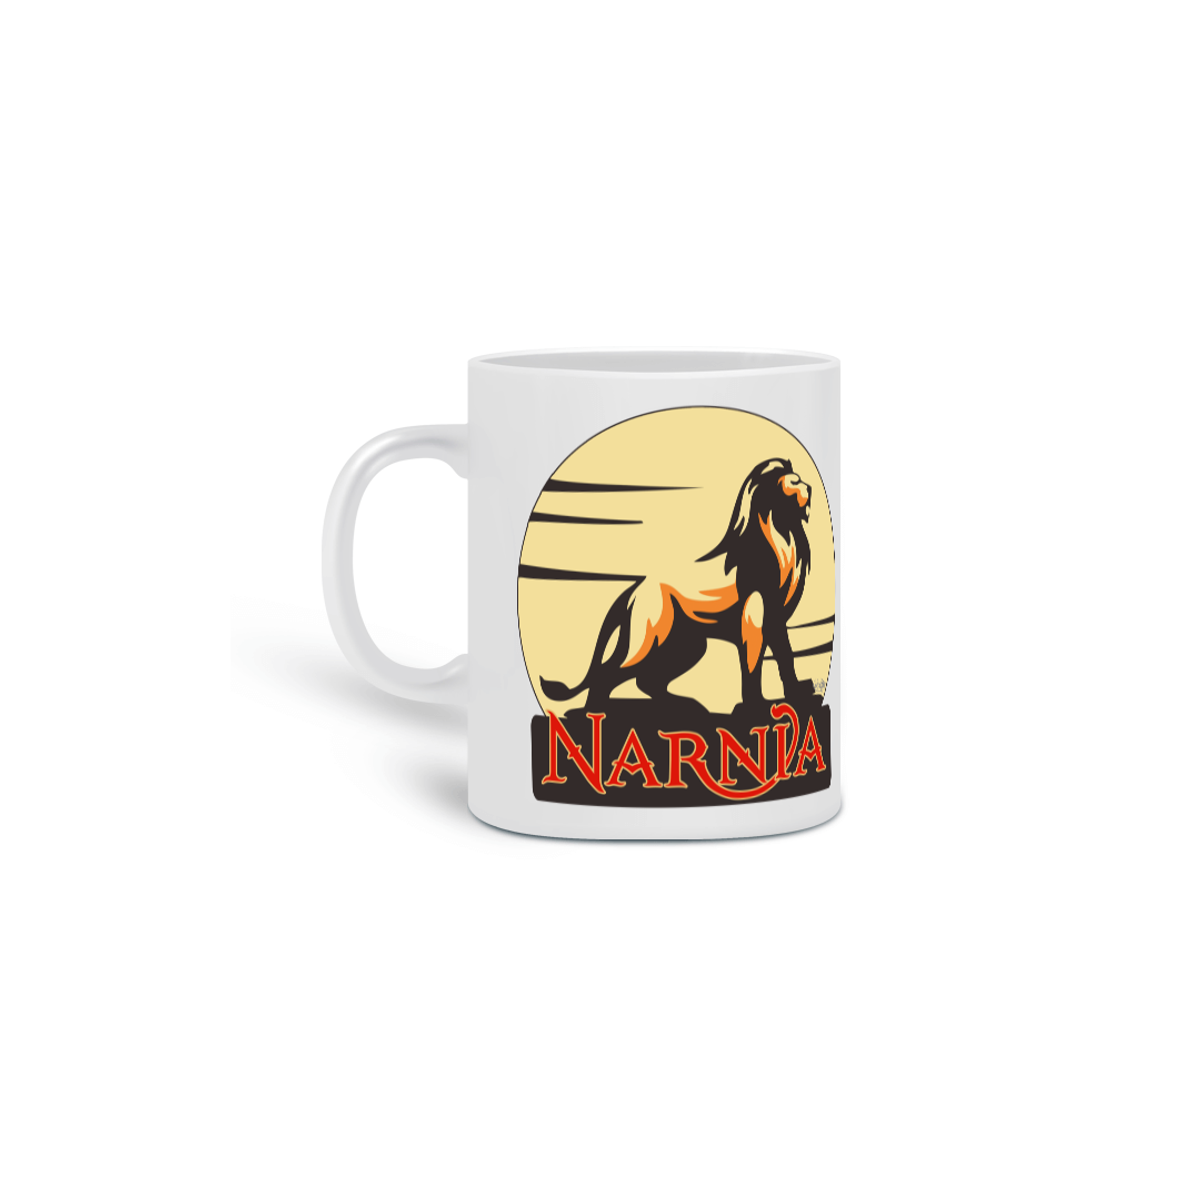 Nome do produto: Caneca Narnia [As Crônicas de Nárnia]